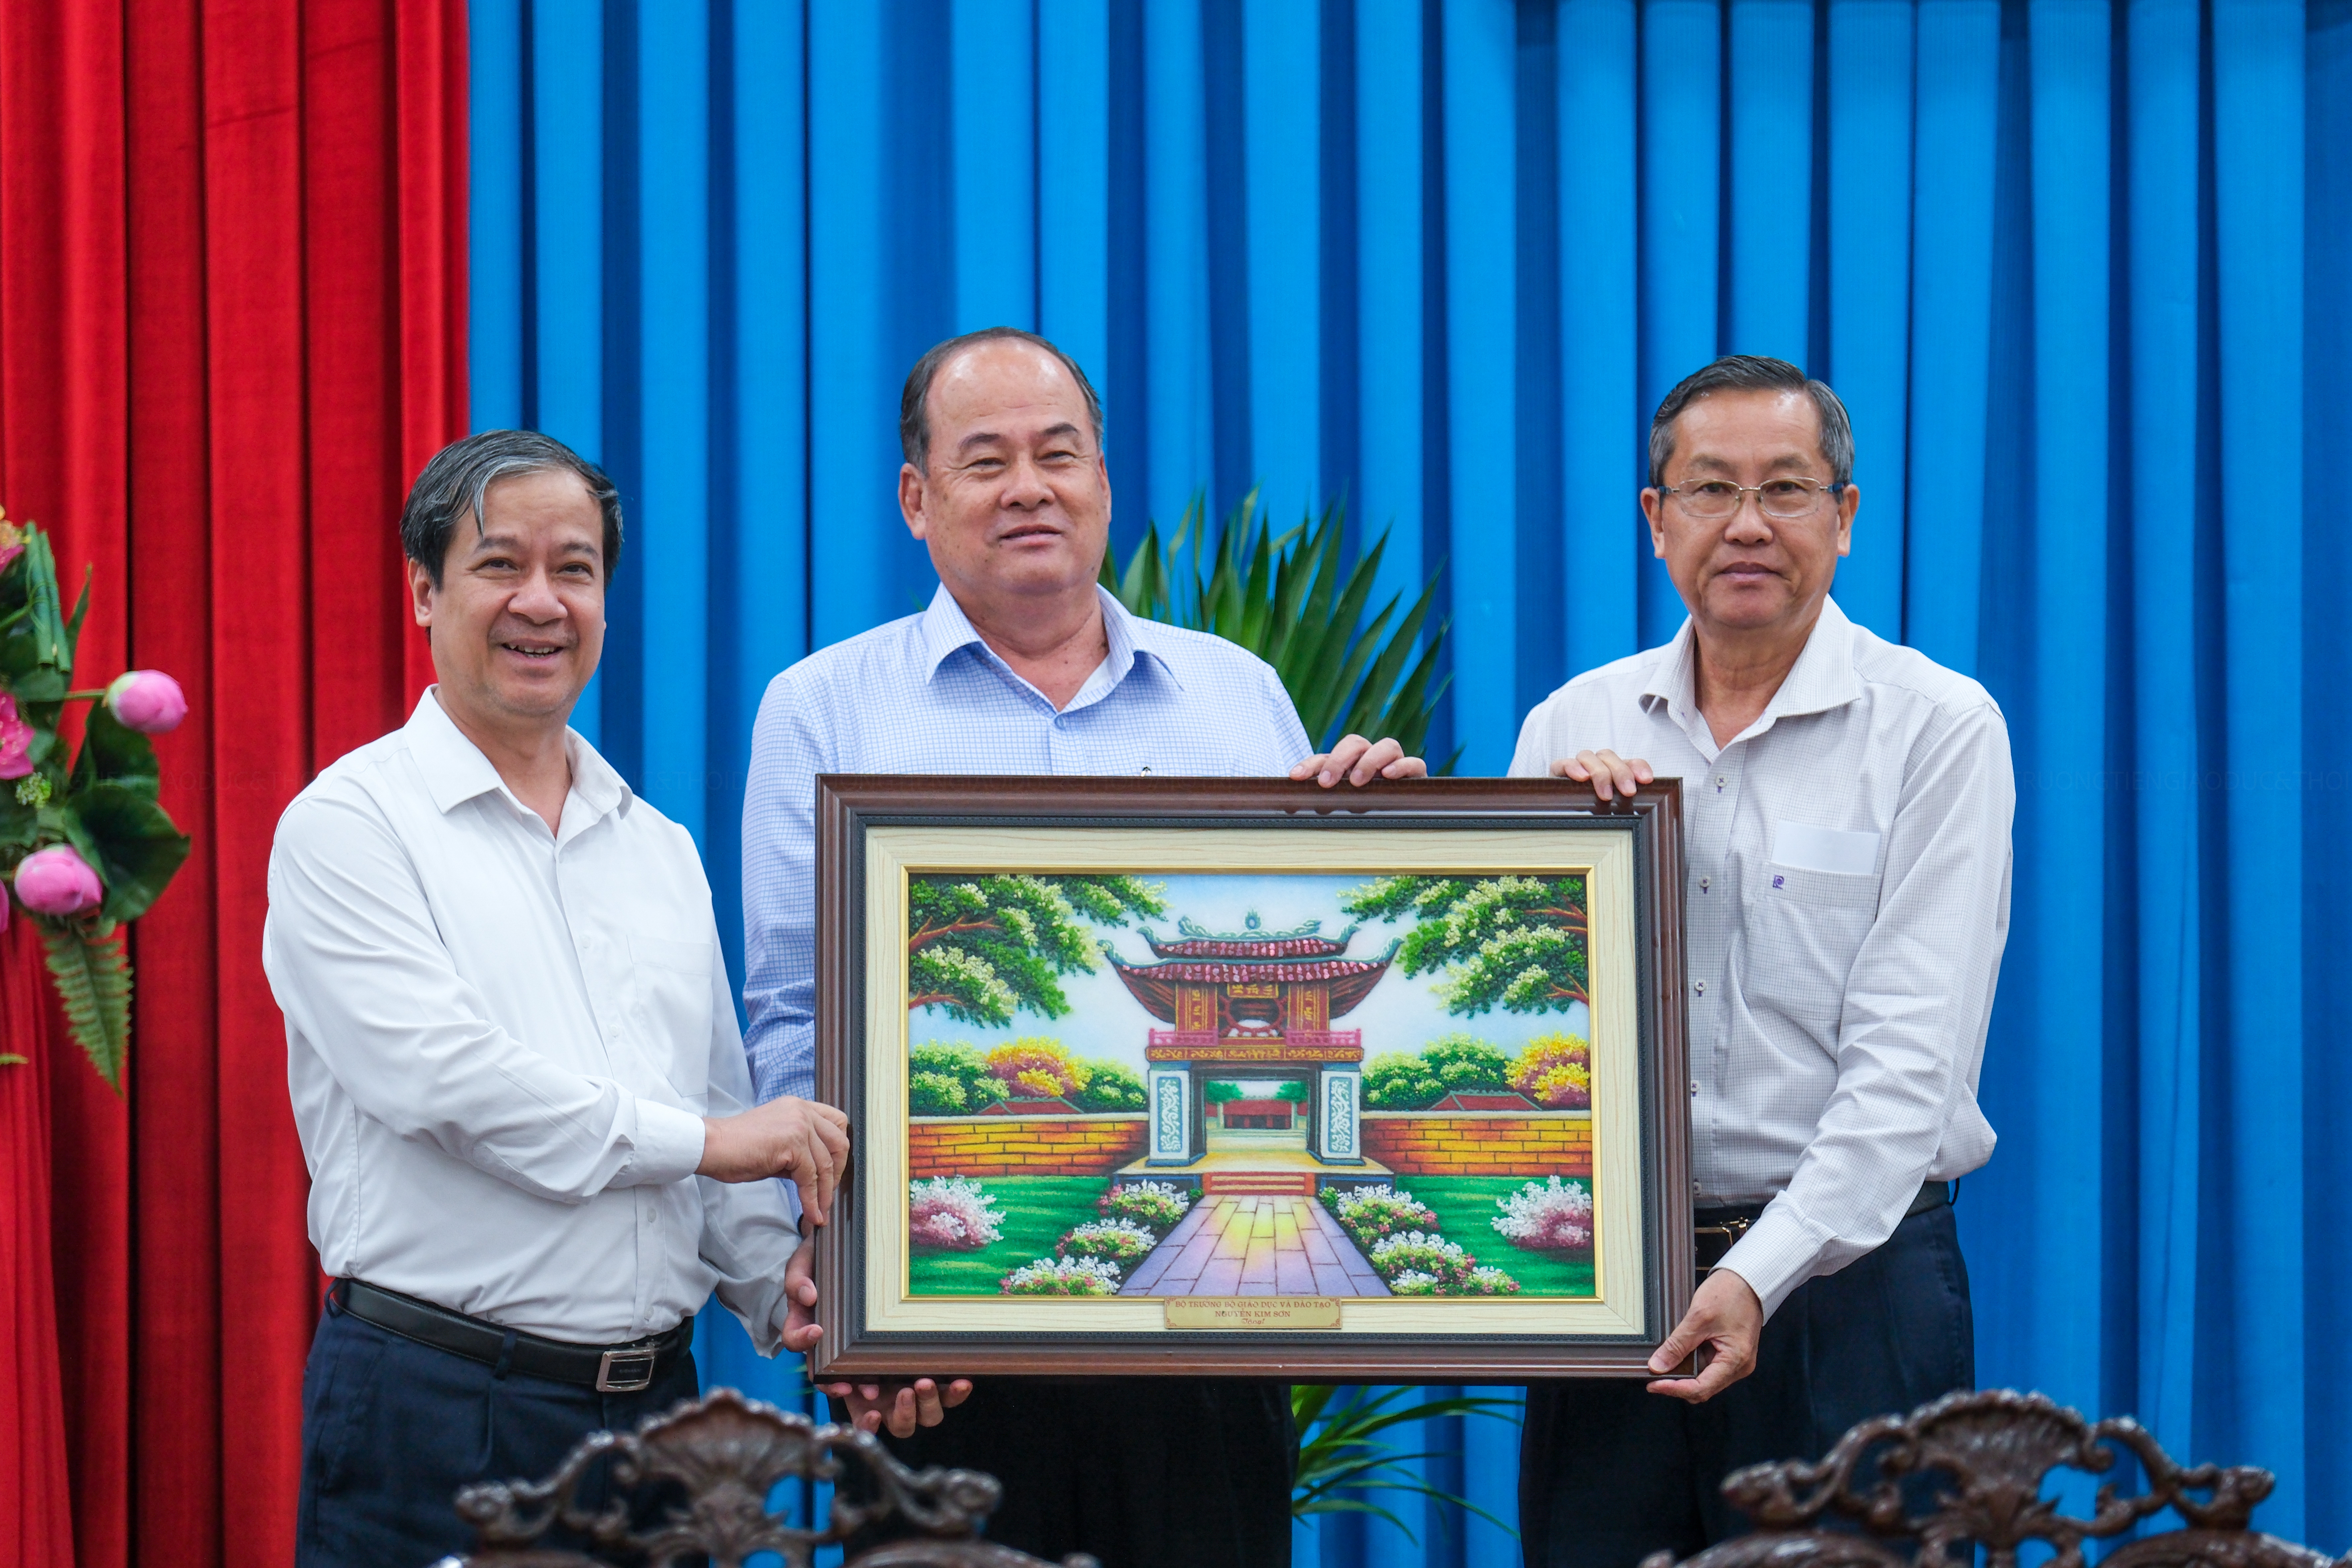 Nhân chuyến công tác, Bộ trưởng Bộ GD&ĐT Nguyễn Kim Sơn tặng bức tranh lưu niệm cho tỉnh An Giang.